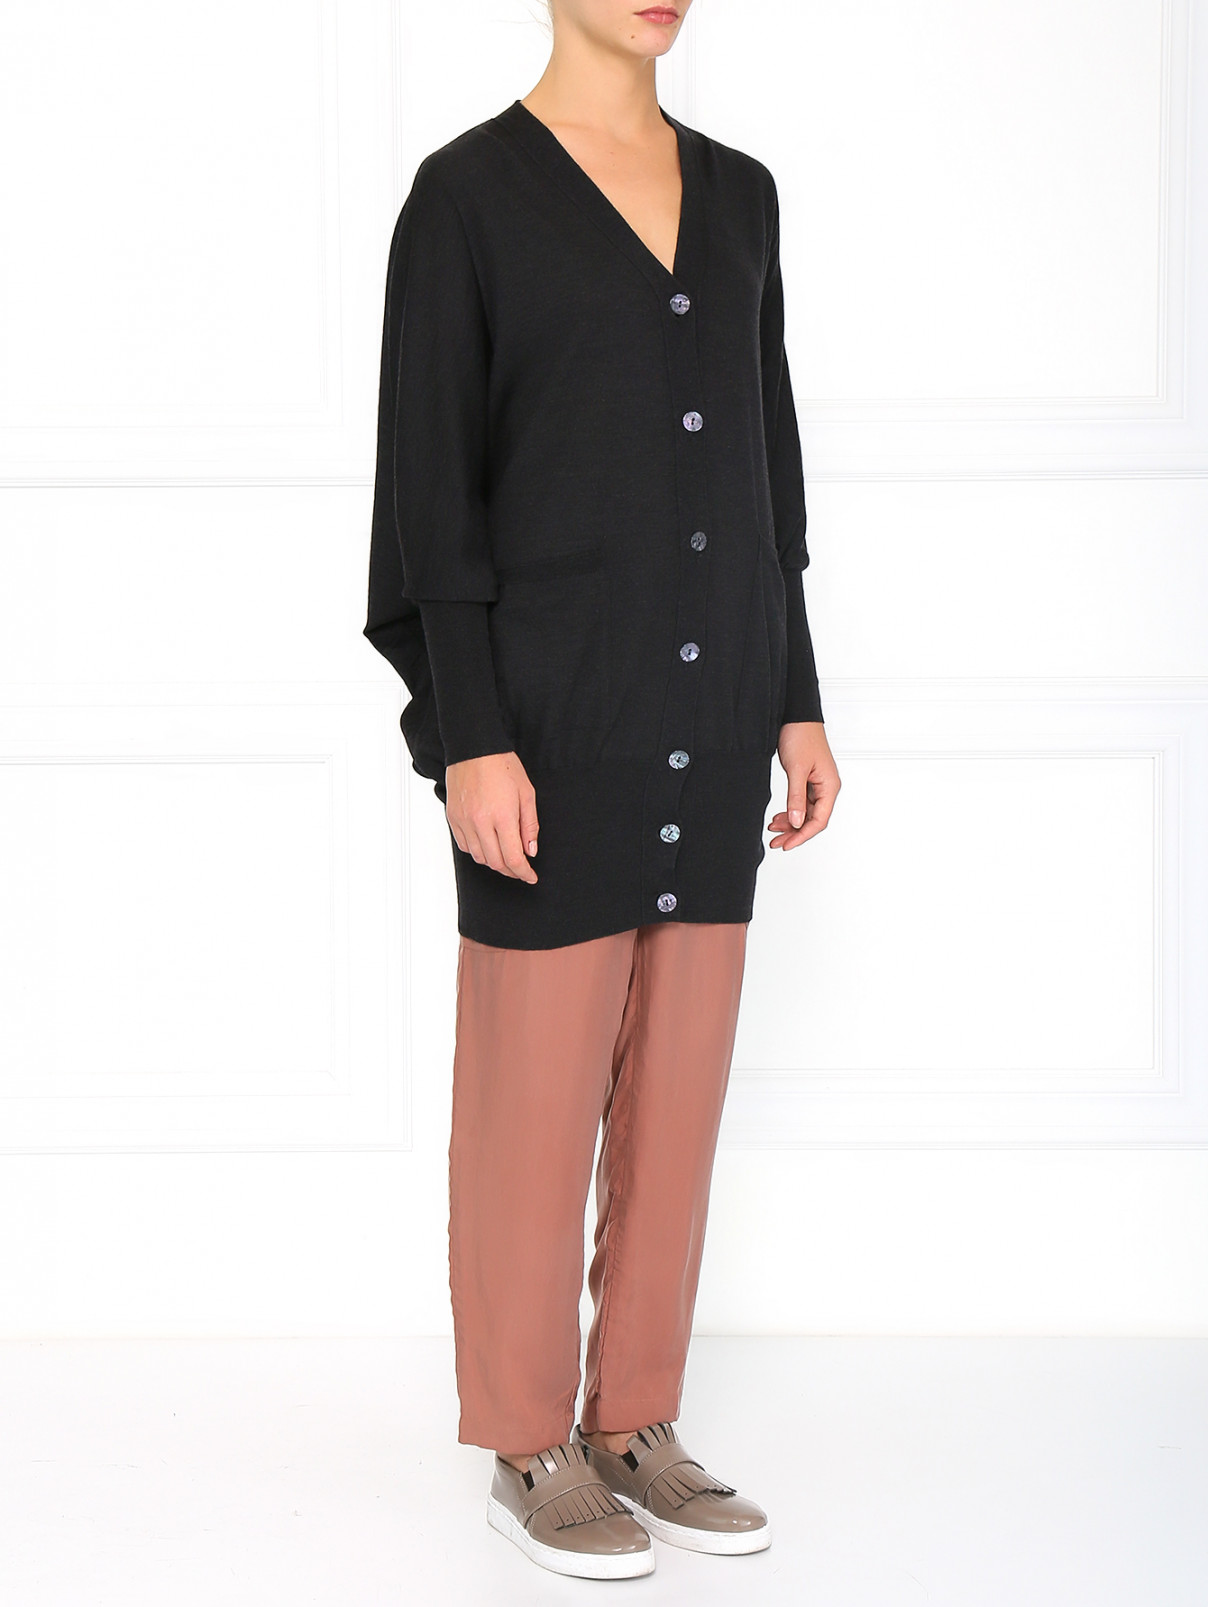 Шерстяной удлиненный кардиган с боковыми карманами Jean Paul Gaultier  –  Модель Общий вид  – Цвет:  Серый